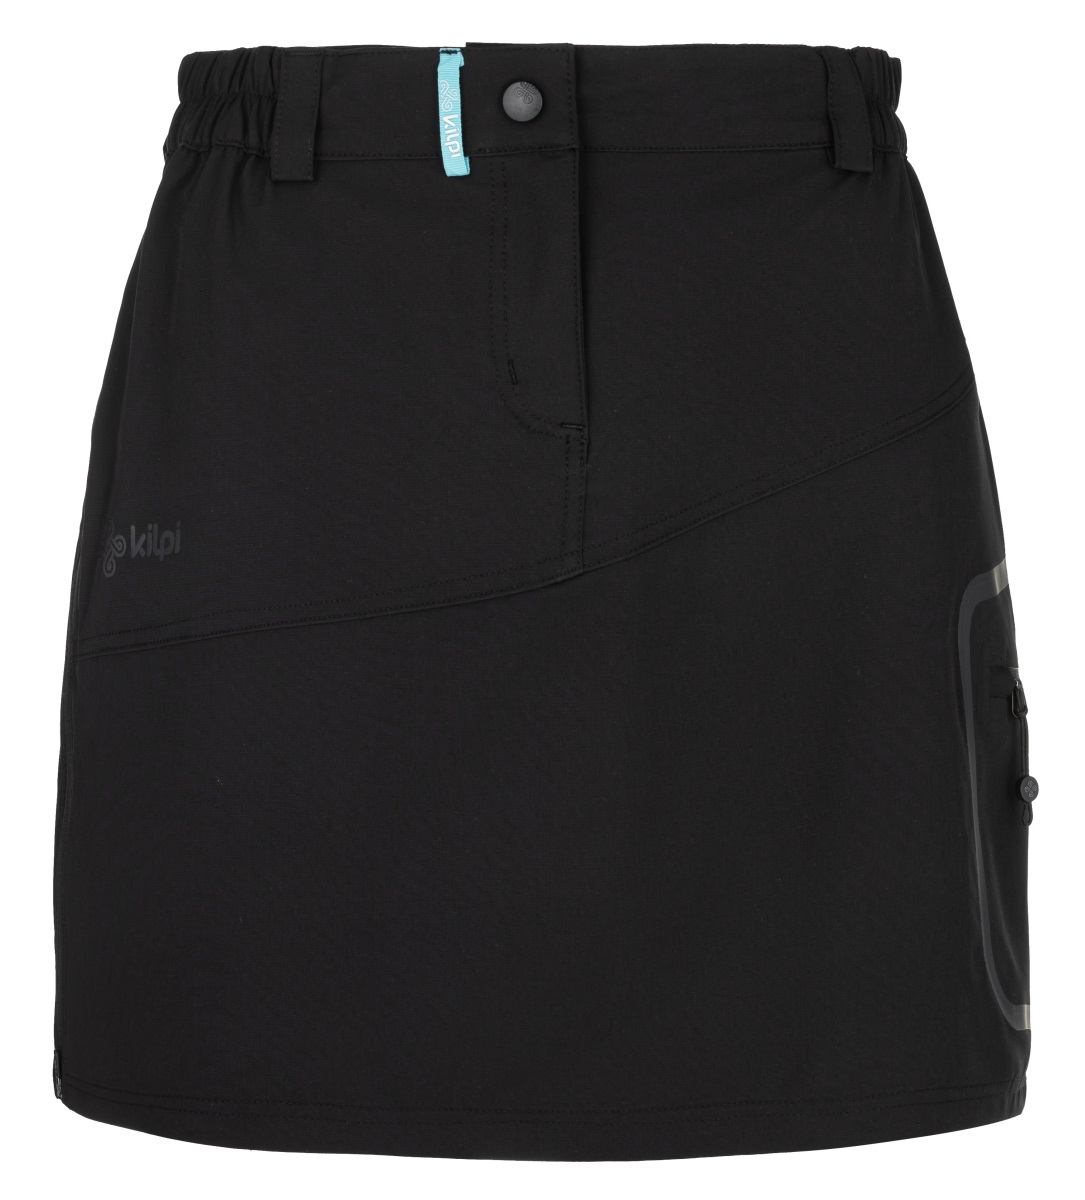 Dámská outdoorová sukně kilpi ana-w černá 40